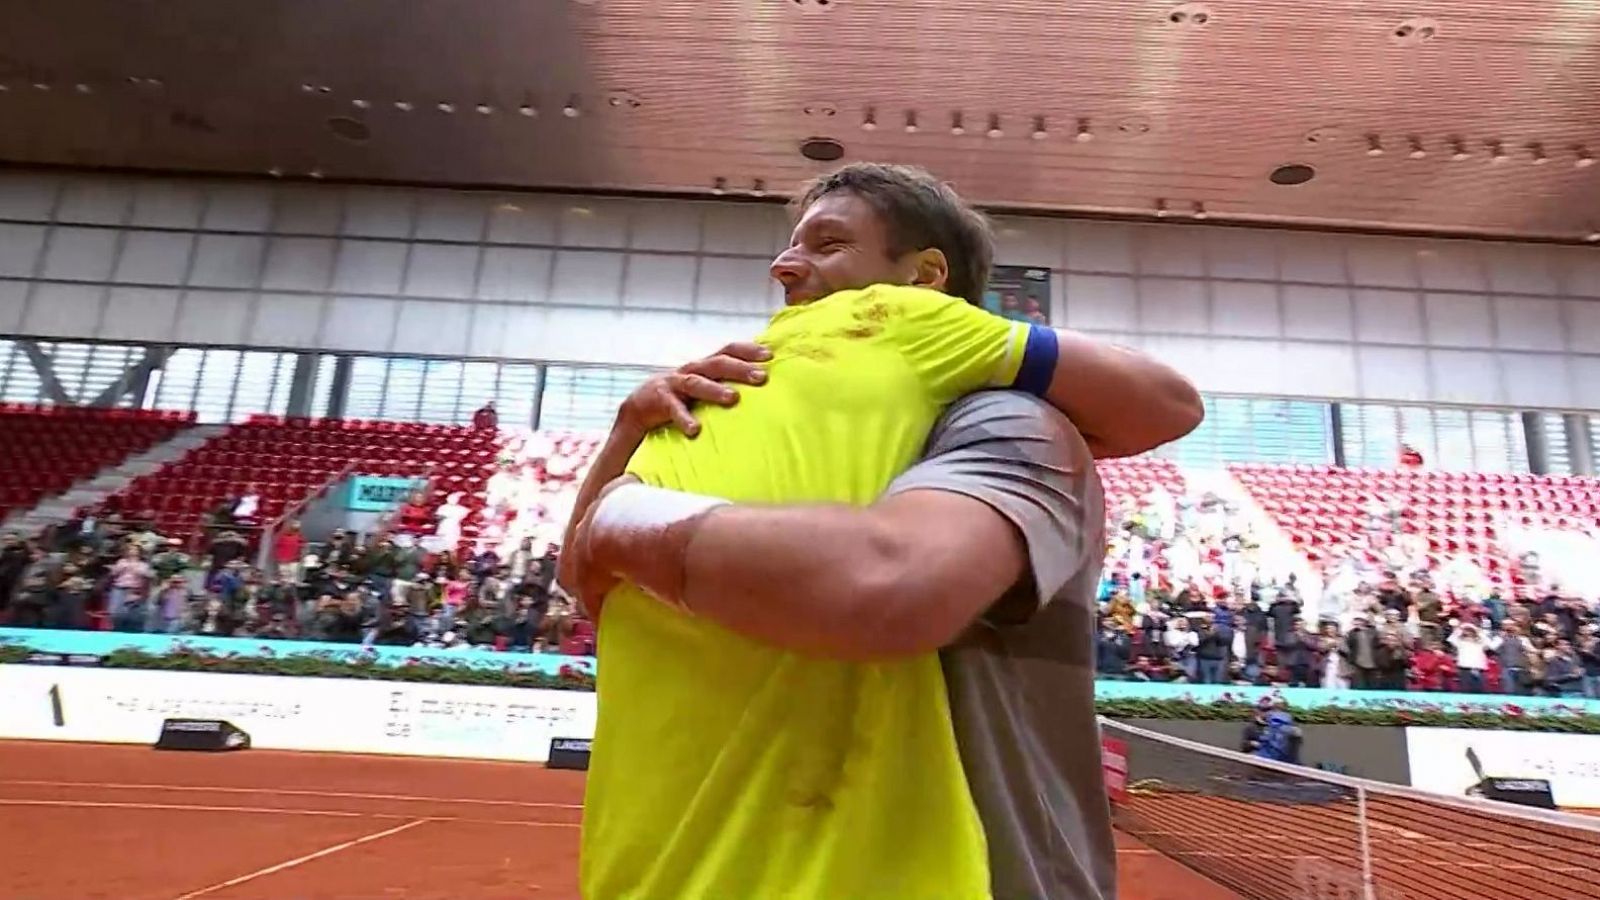 La emoción de Granollers y Zeballos tras confirmar su nº1 de dobles en el Madrid Open: "Cásate conmigo"